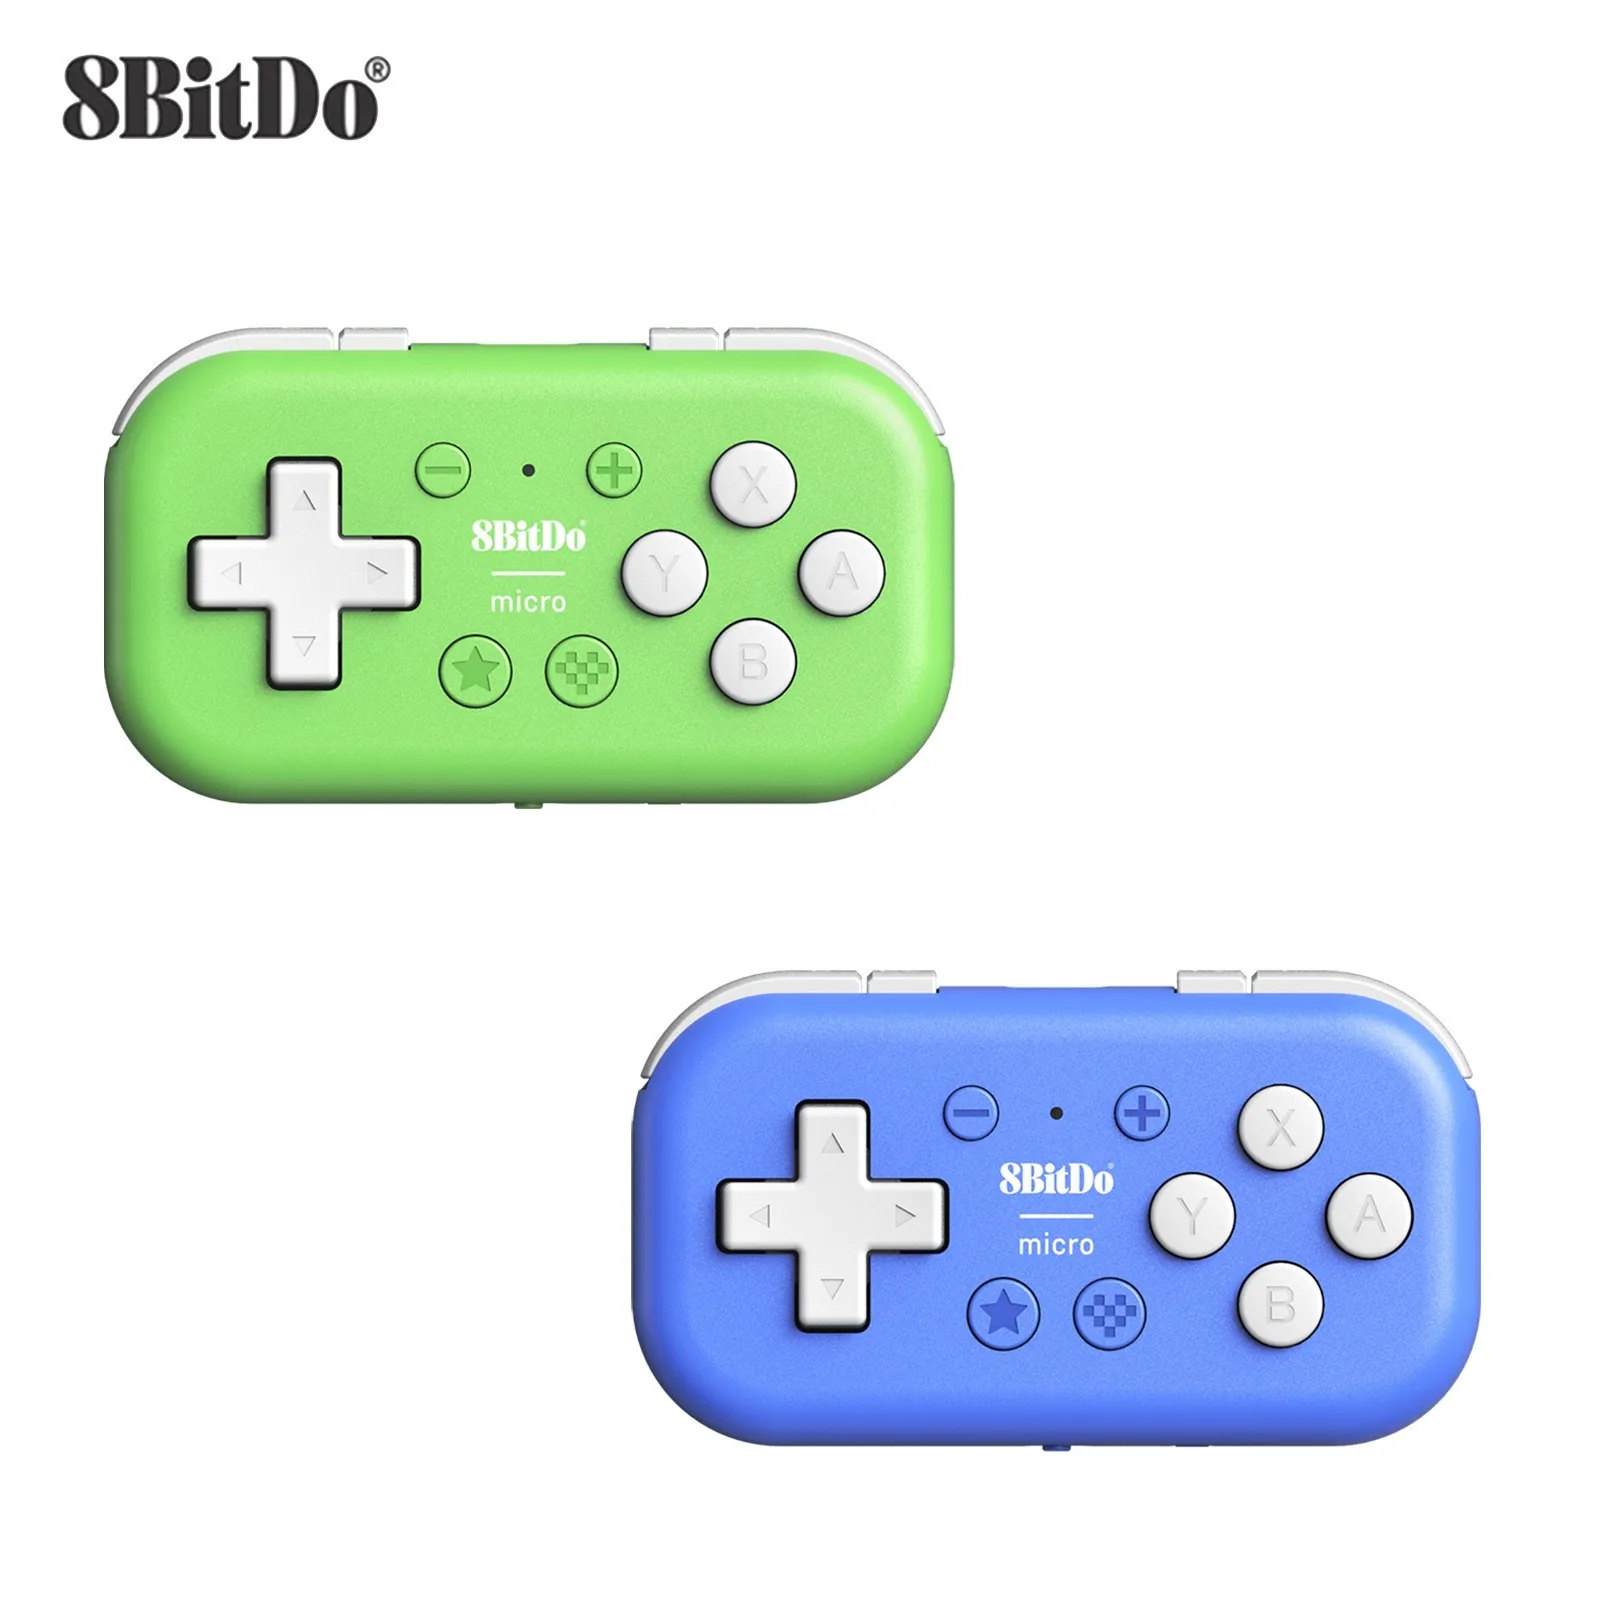 Джобен мини безжична гейминг контролер 8BitDo Micro Bluetooth за Nintendo Switch Android Raspberry Pi Retropie Joystick